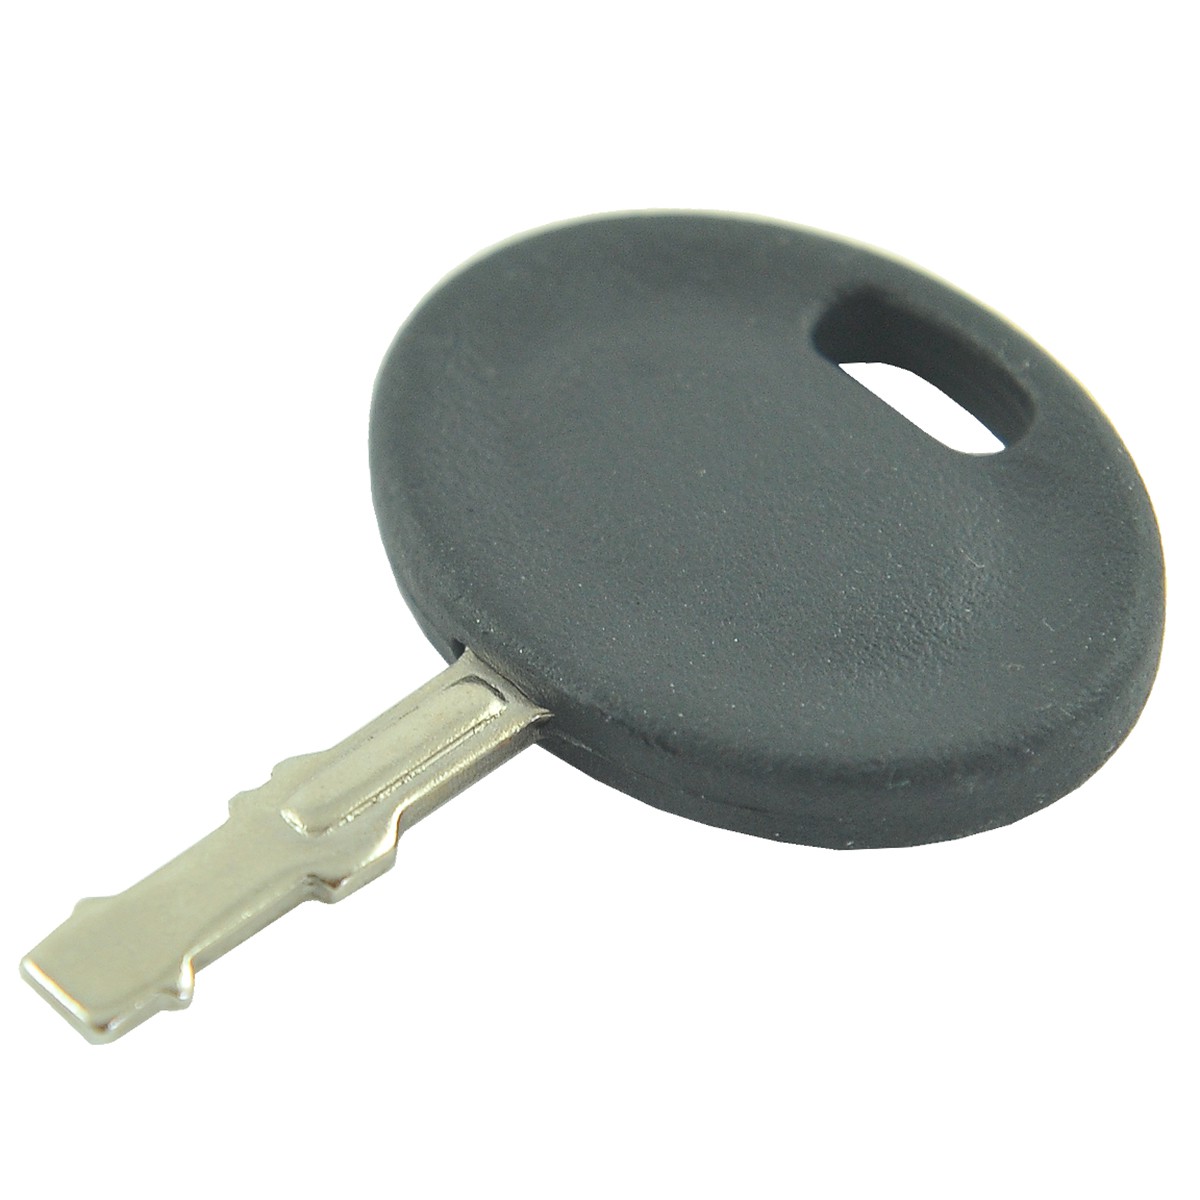 Mower key for Cub Cadet / Stiga / MTD / Husqvarna / 925-1745A / 725-1745 / 725-1745A